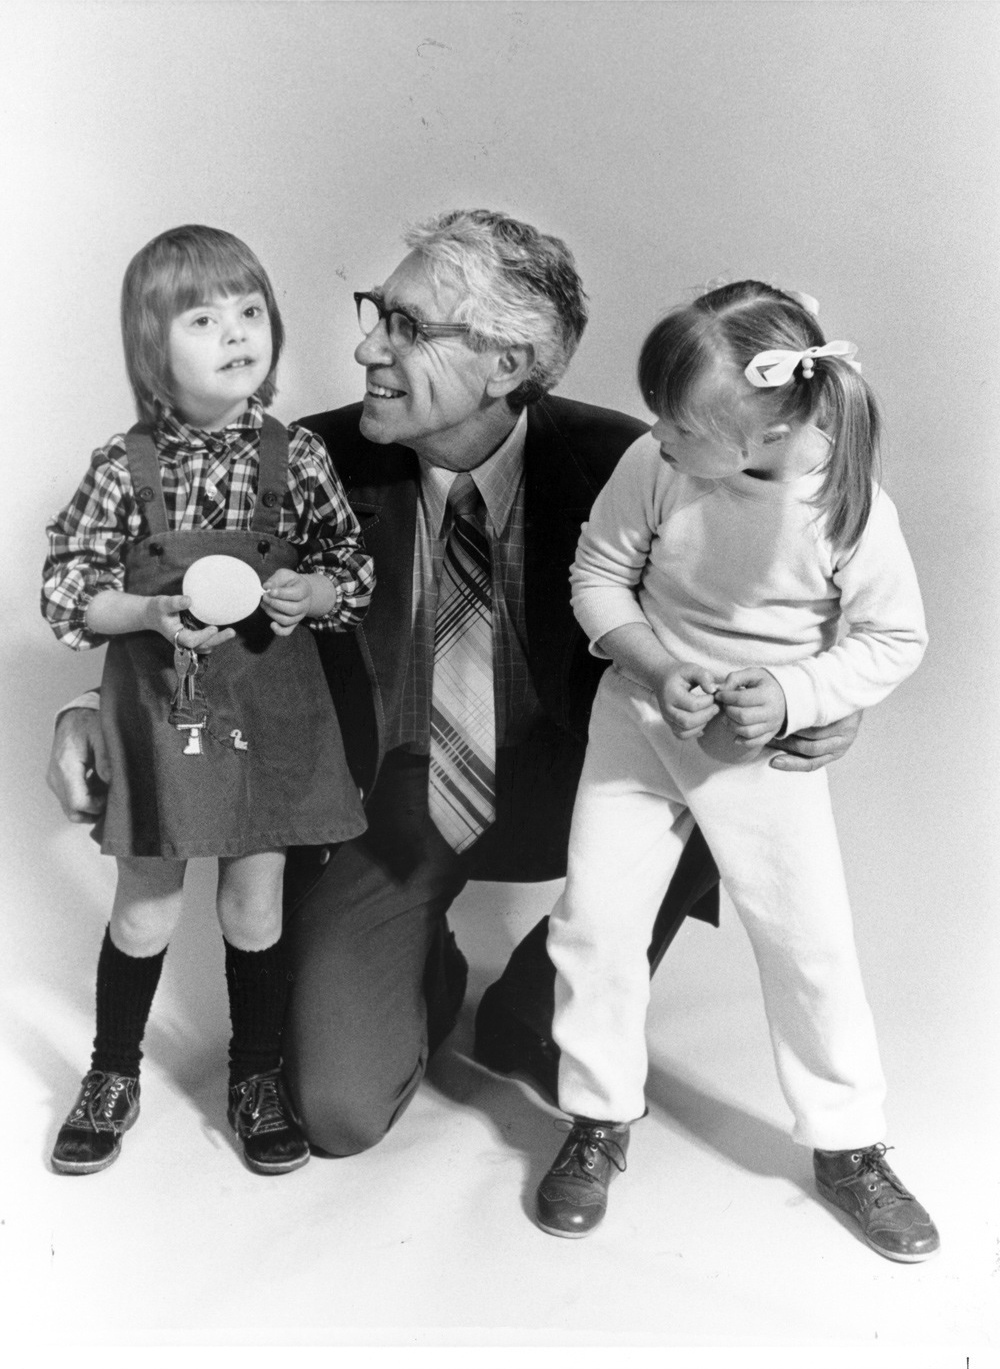 Richard Schiefelbusch with two children